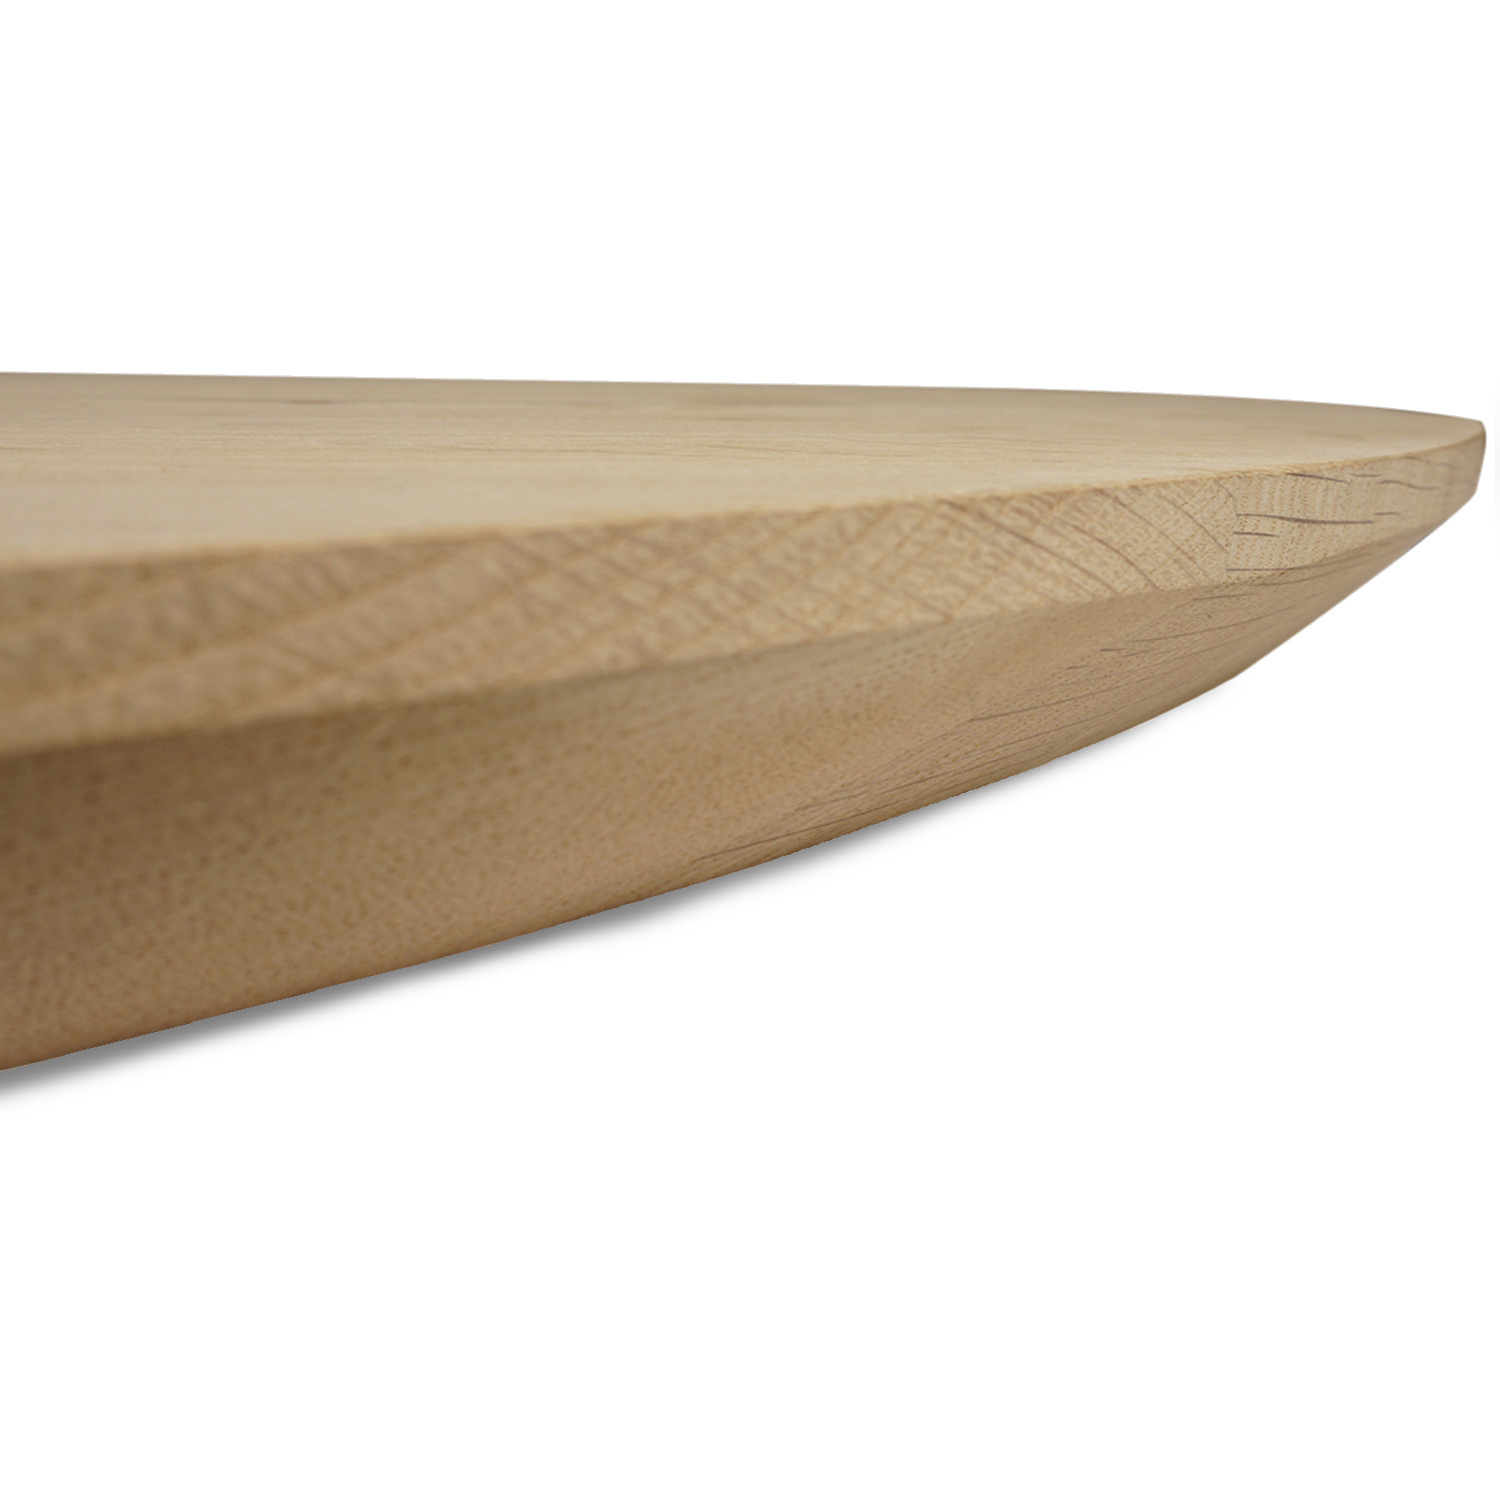  Eiken tafelblad rond - 2,7 cm dik (1-laag) - Diverse afmetingen - optioneel geborsteld - foutvrij Europees eikenhout - met brede lamellen (circa 10-12 cm) - verlijmd kd 10-12%